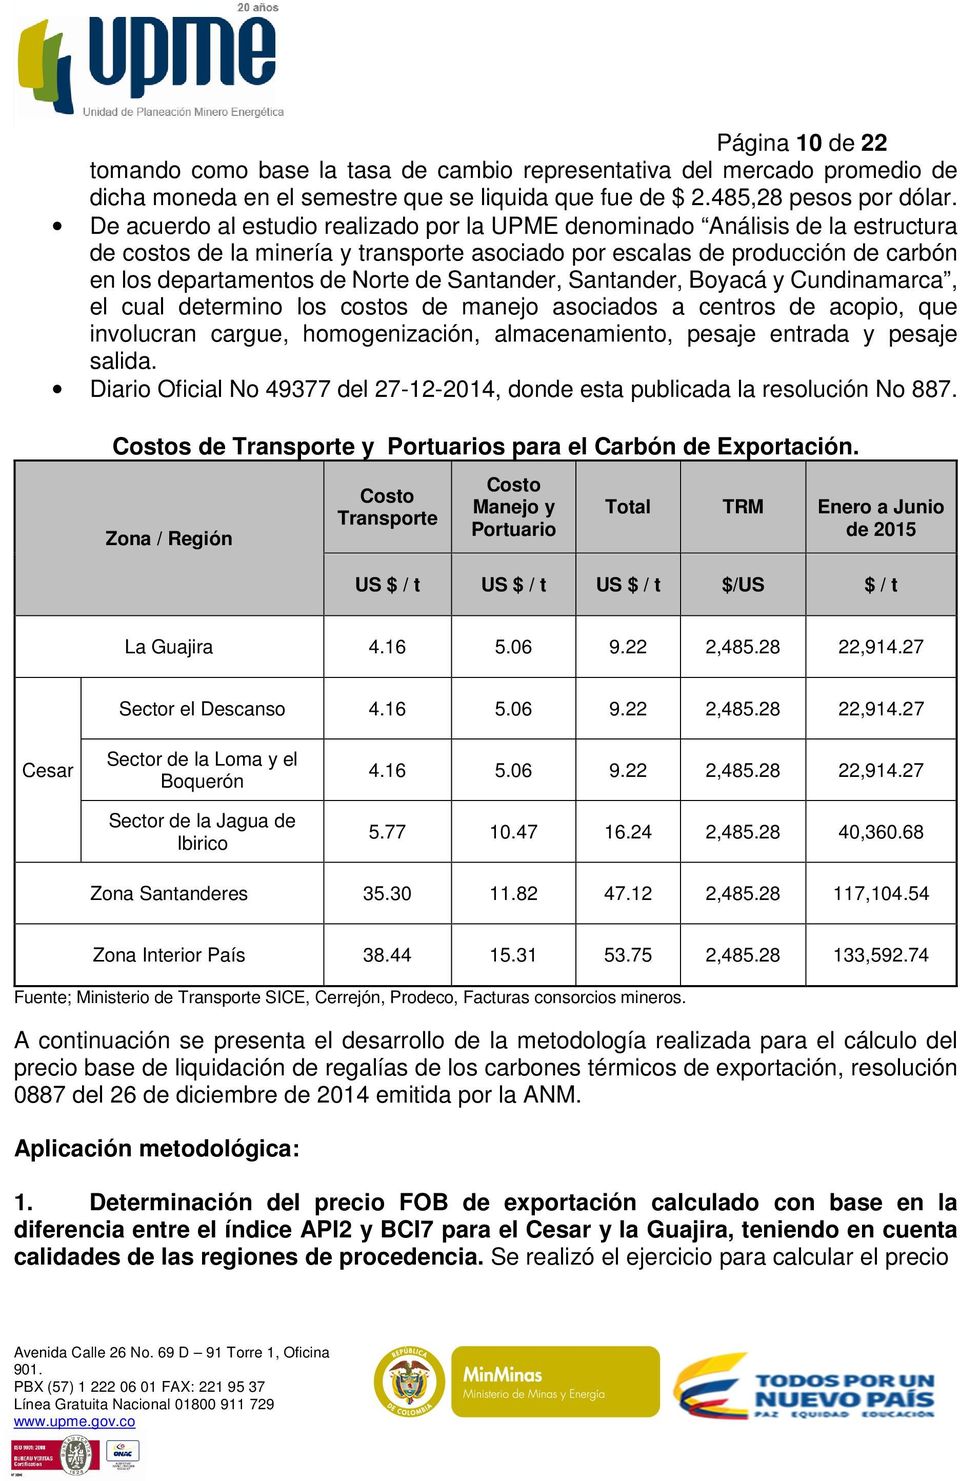 Santander, Santander, Boyacá y Cundinamarca, el cual determino los costos de manejo asociados a centros de acopio, que involucran cargue, homogenización, almacenamiento, pesaje entrada y pesaje